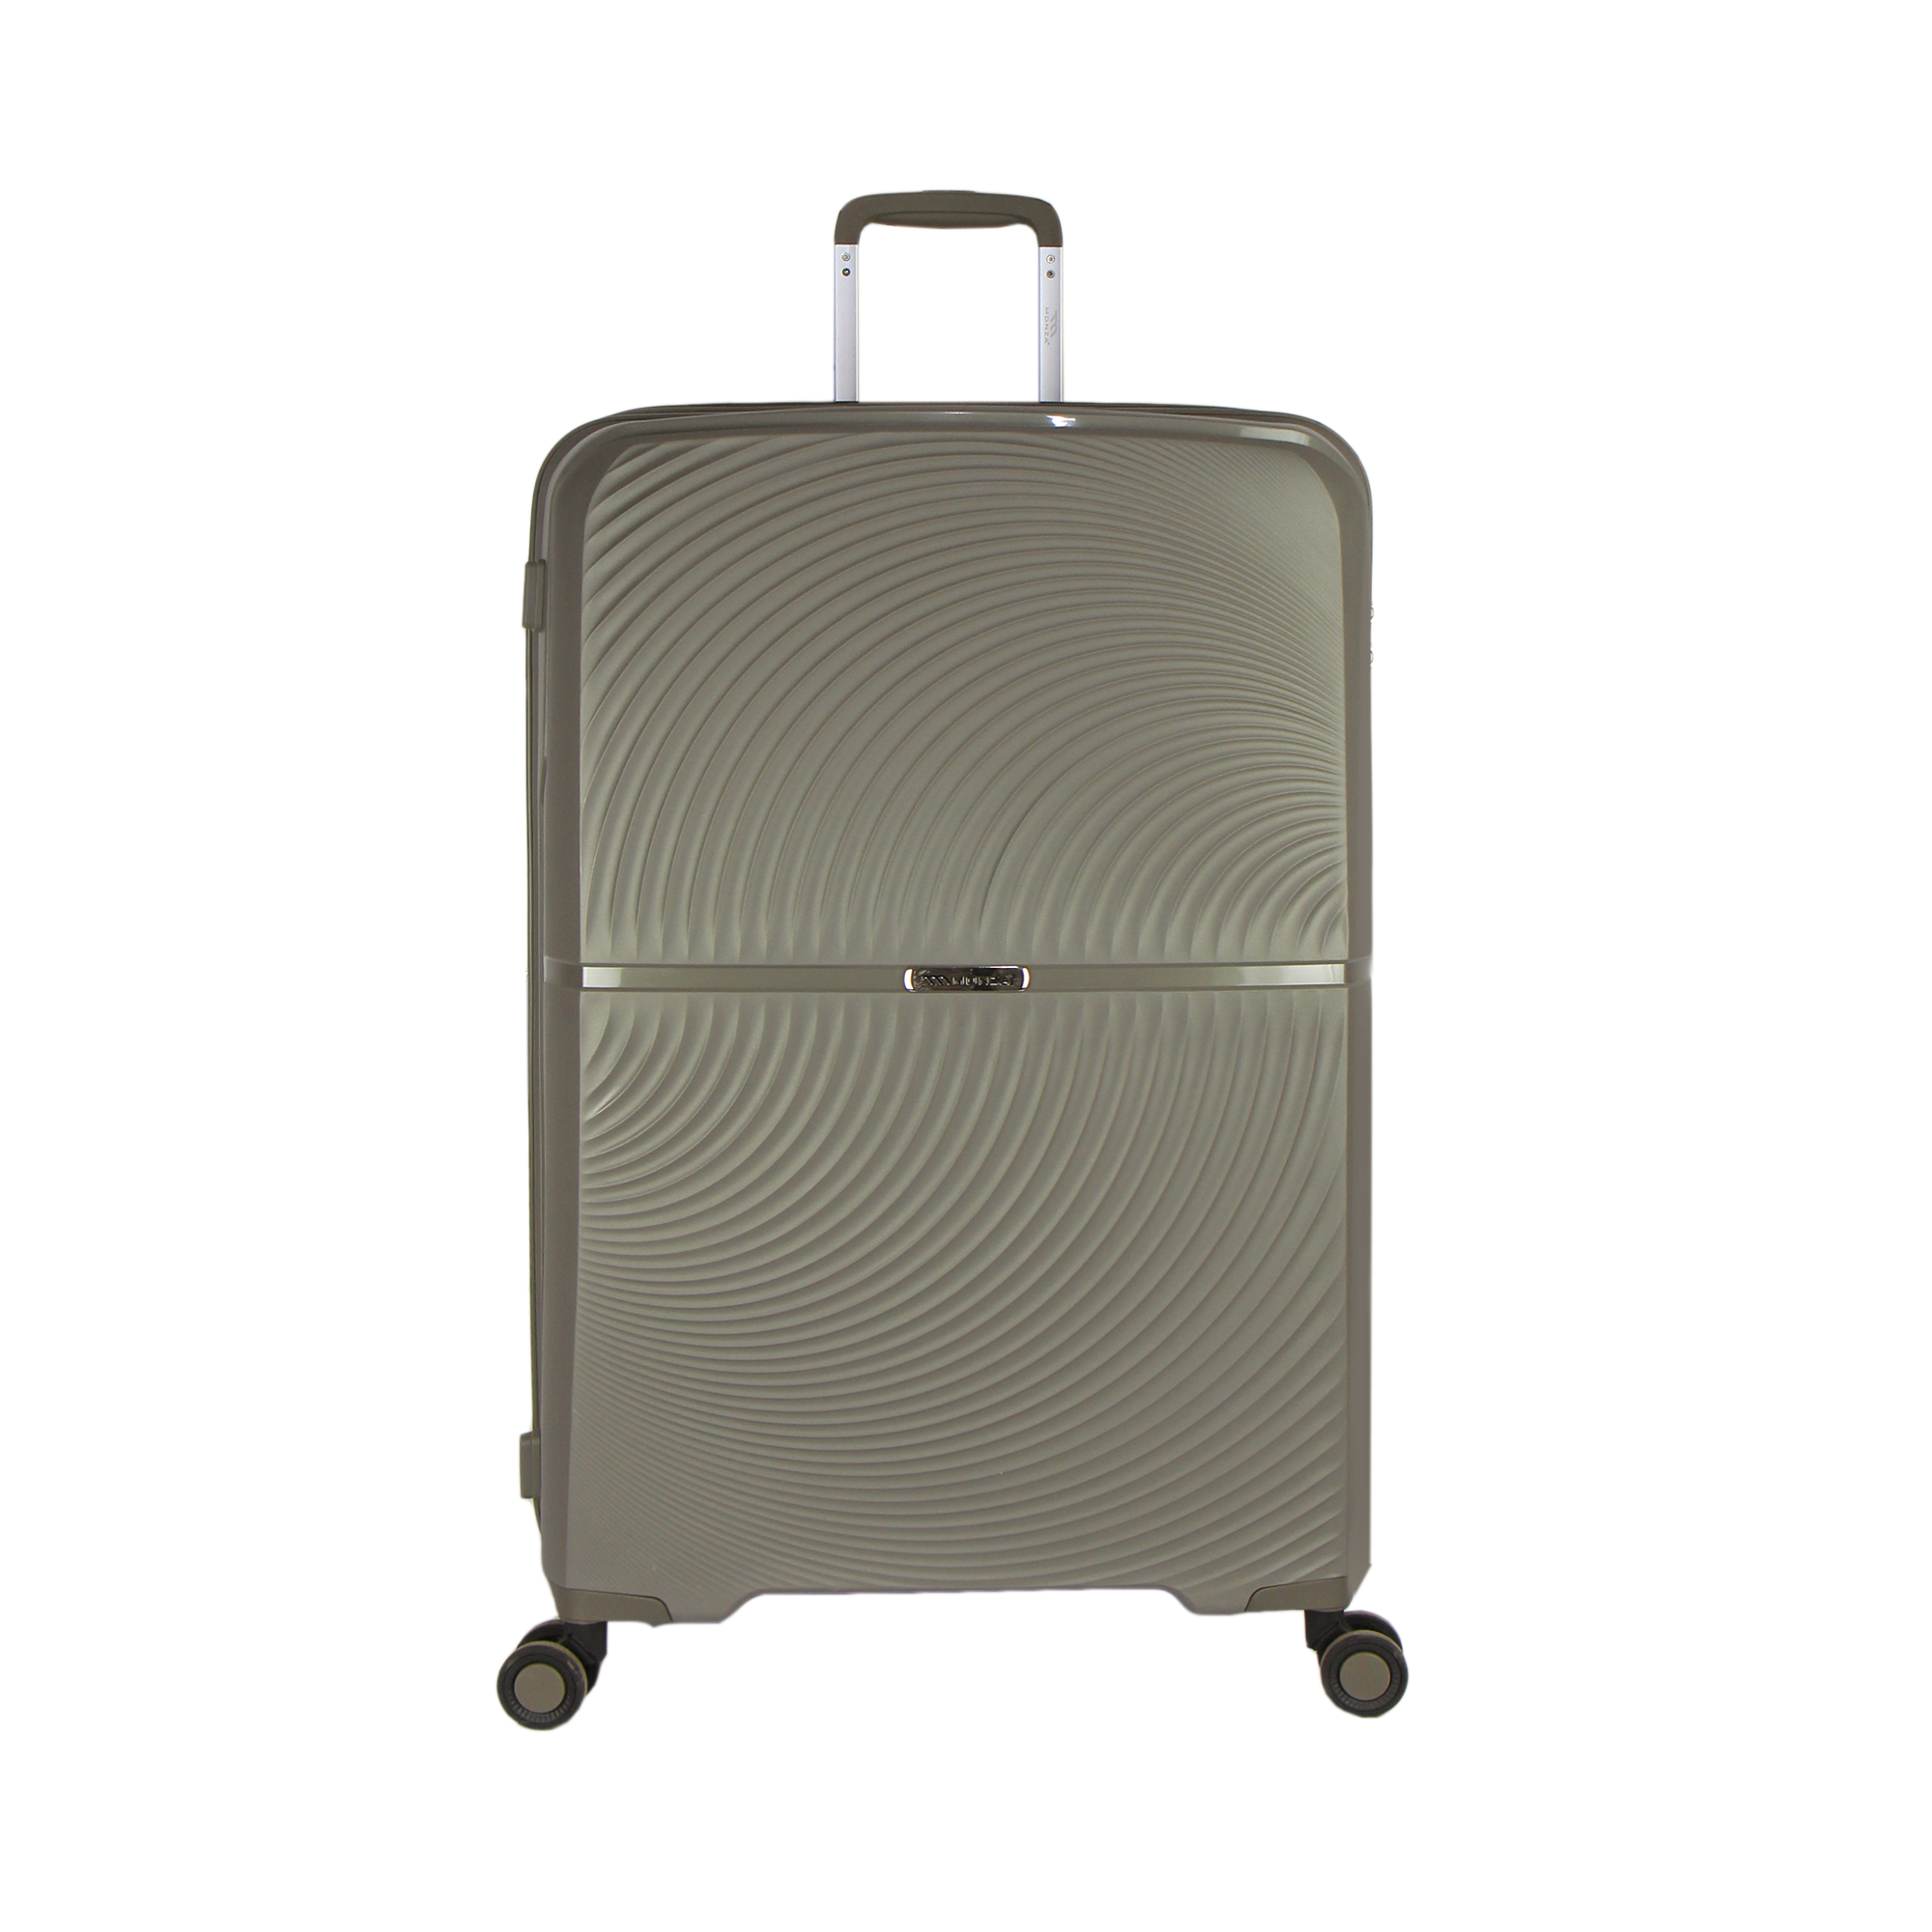 چمدان مونزا مدل C01047 سایز بزرگ